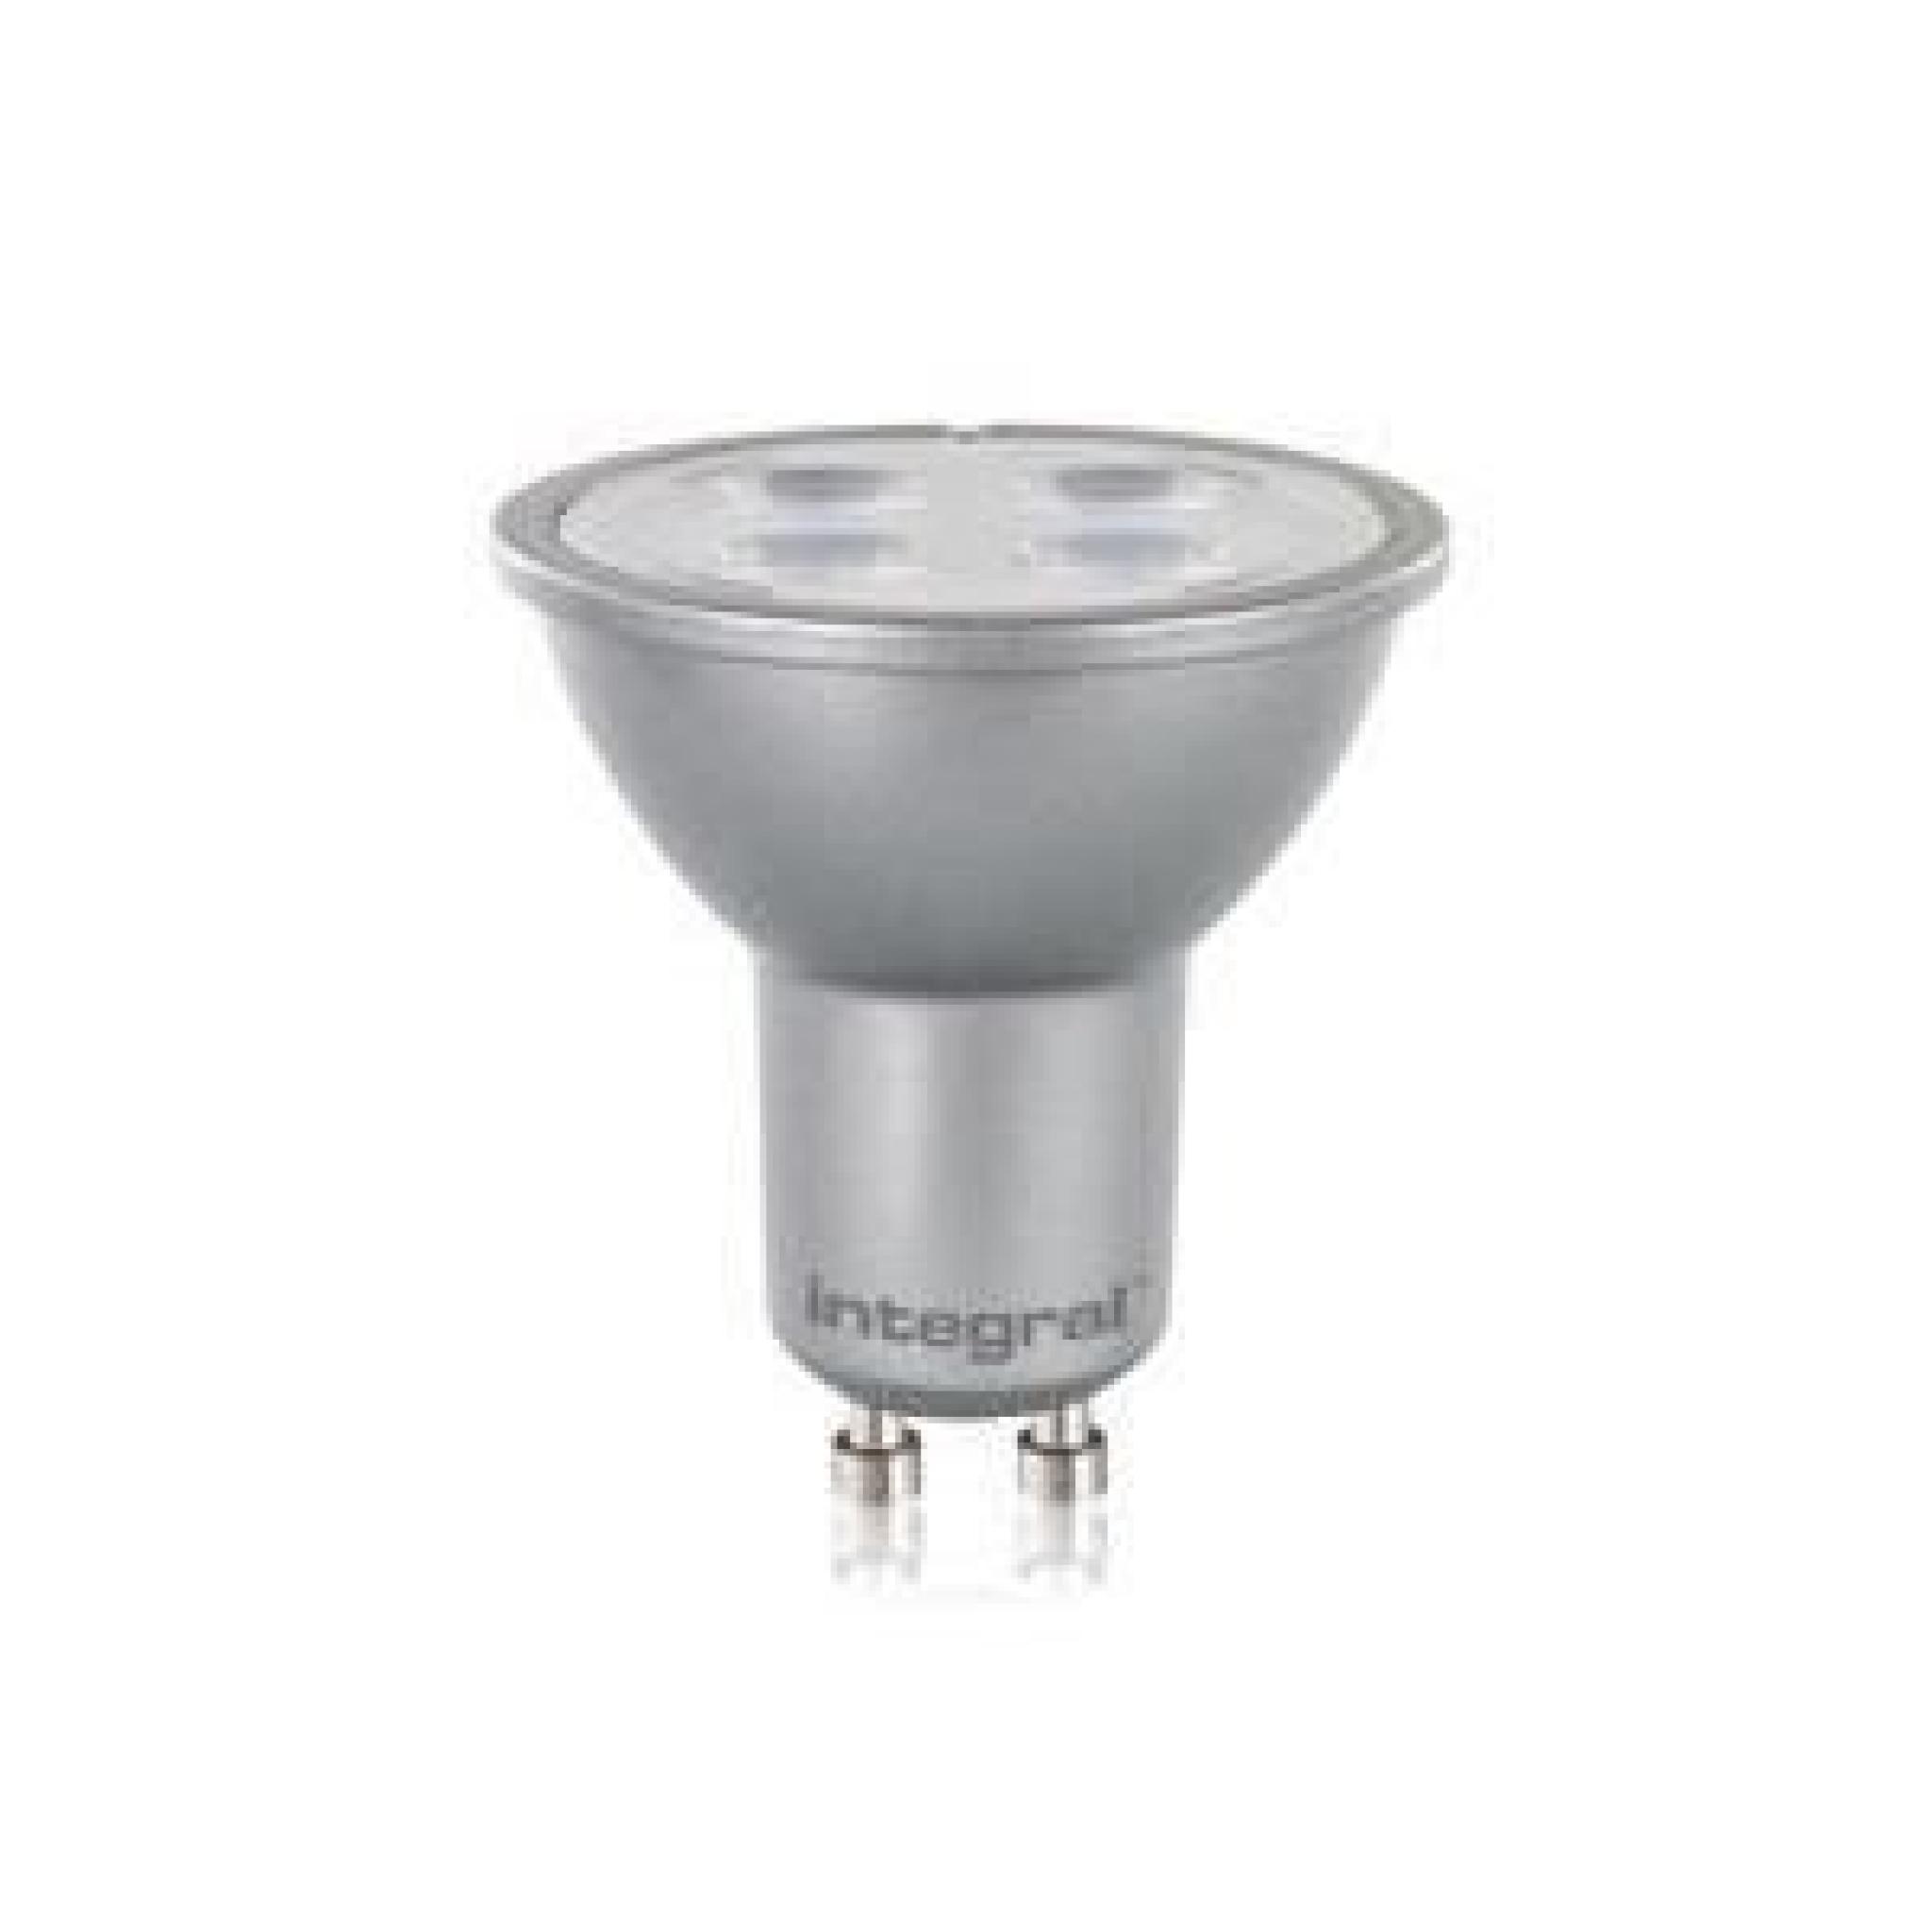 LED PAR16 GU10 INTÉGRANTE ARGENT 5W (50W) 2700K 380LM NON-DIMMABLE LAMPE INTEGRAL 34-29-98